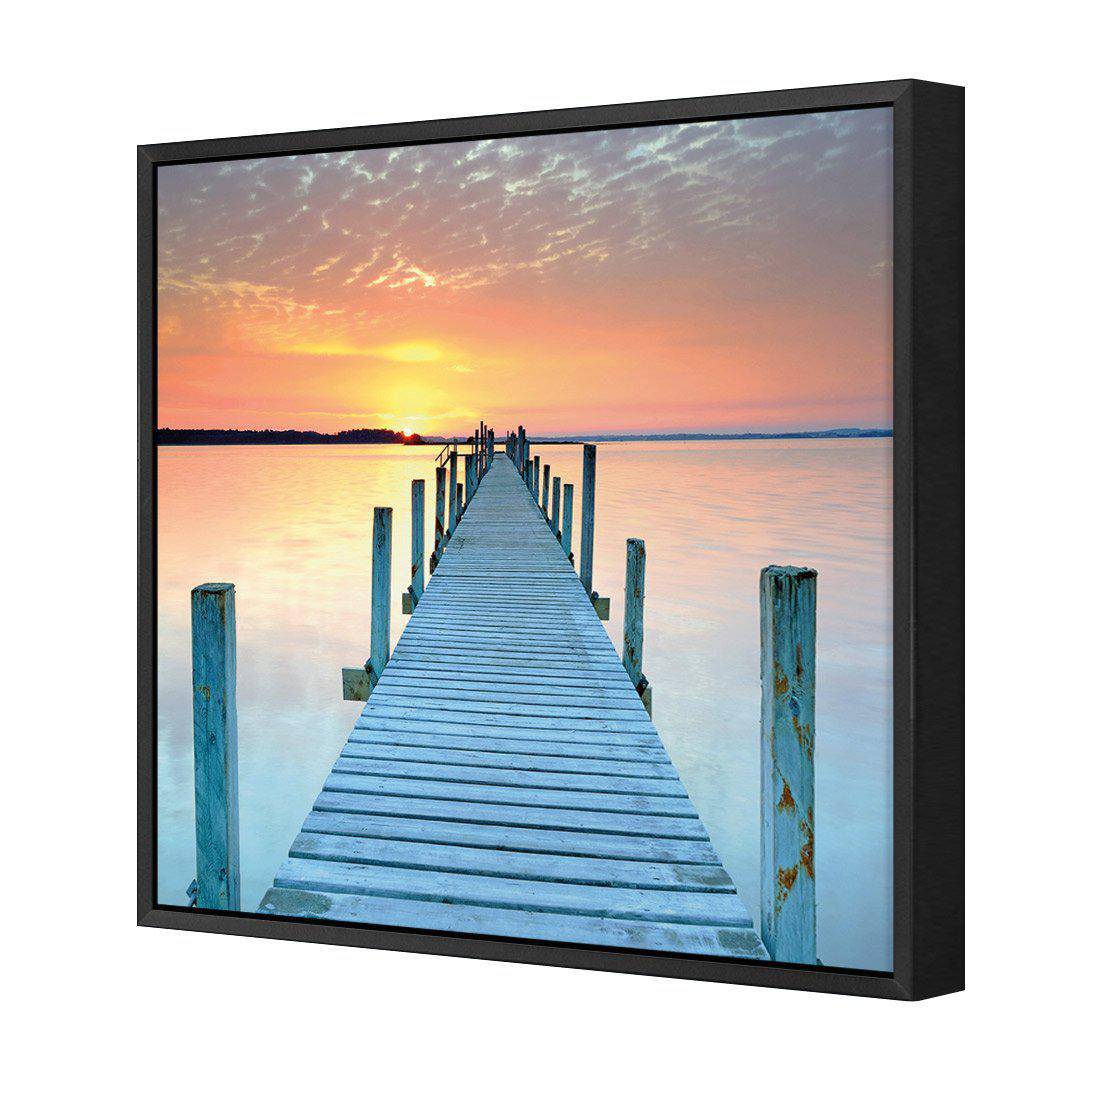 Sunset Pier Canvas Art-Canvas-Wall Art Designs-30x30cm-Canvas - Black Frame-Wall Art Designs